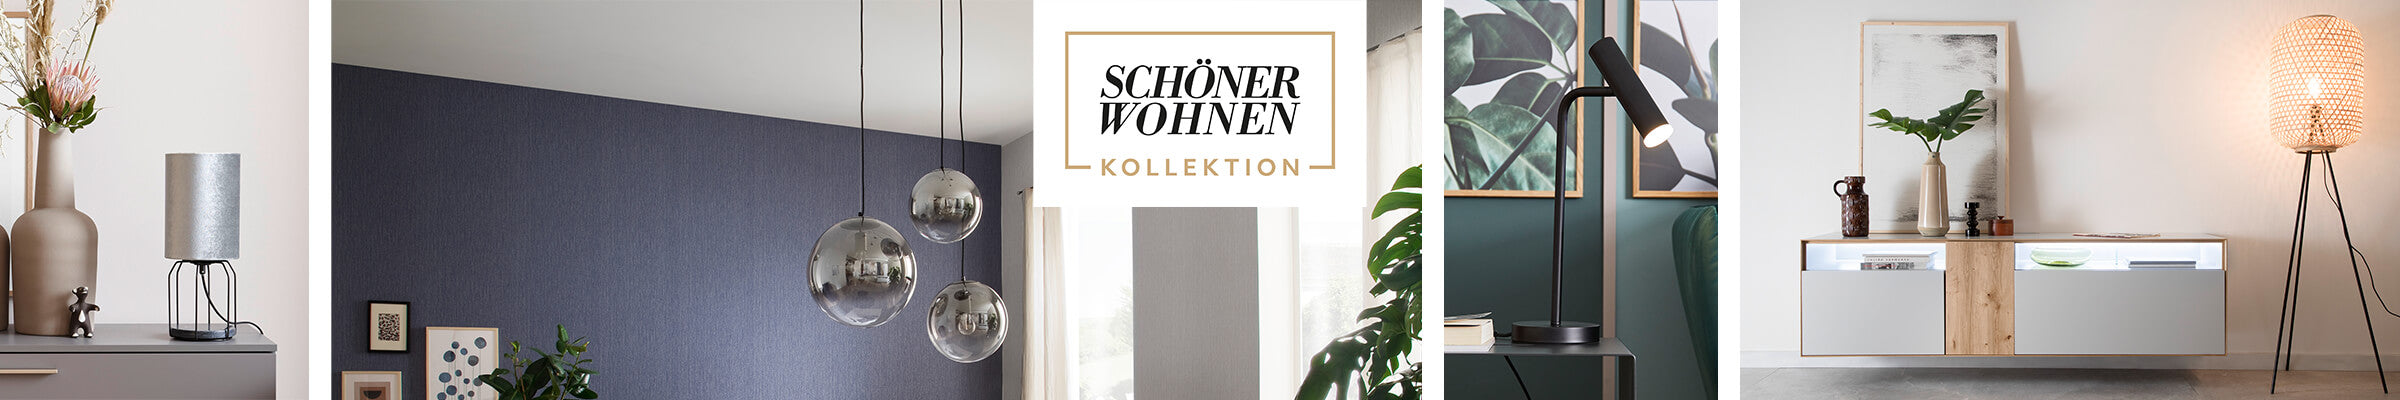 SCHÖNER WOHNEN Kollektion Leuchten – WohnDirect.com - Heimtextilien und  Wohnaccessoires